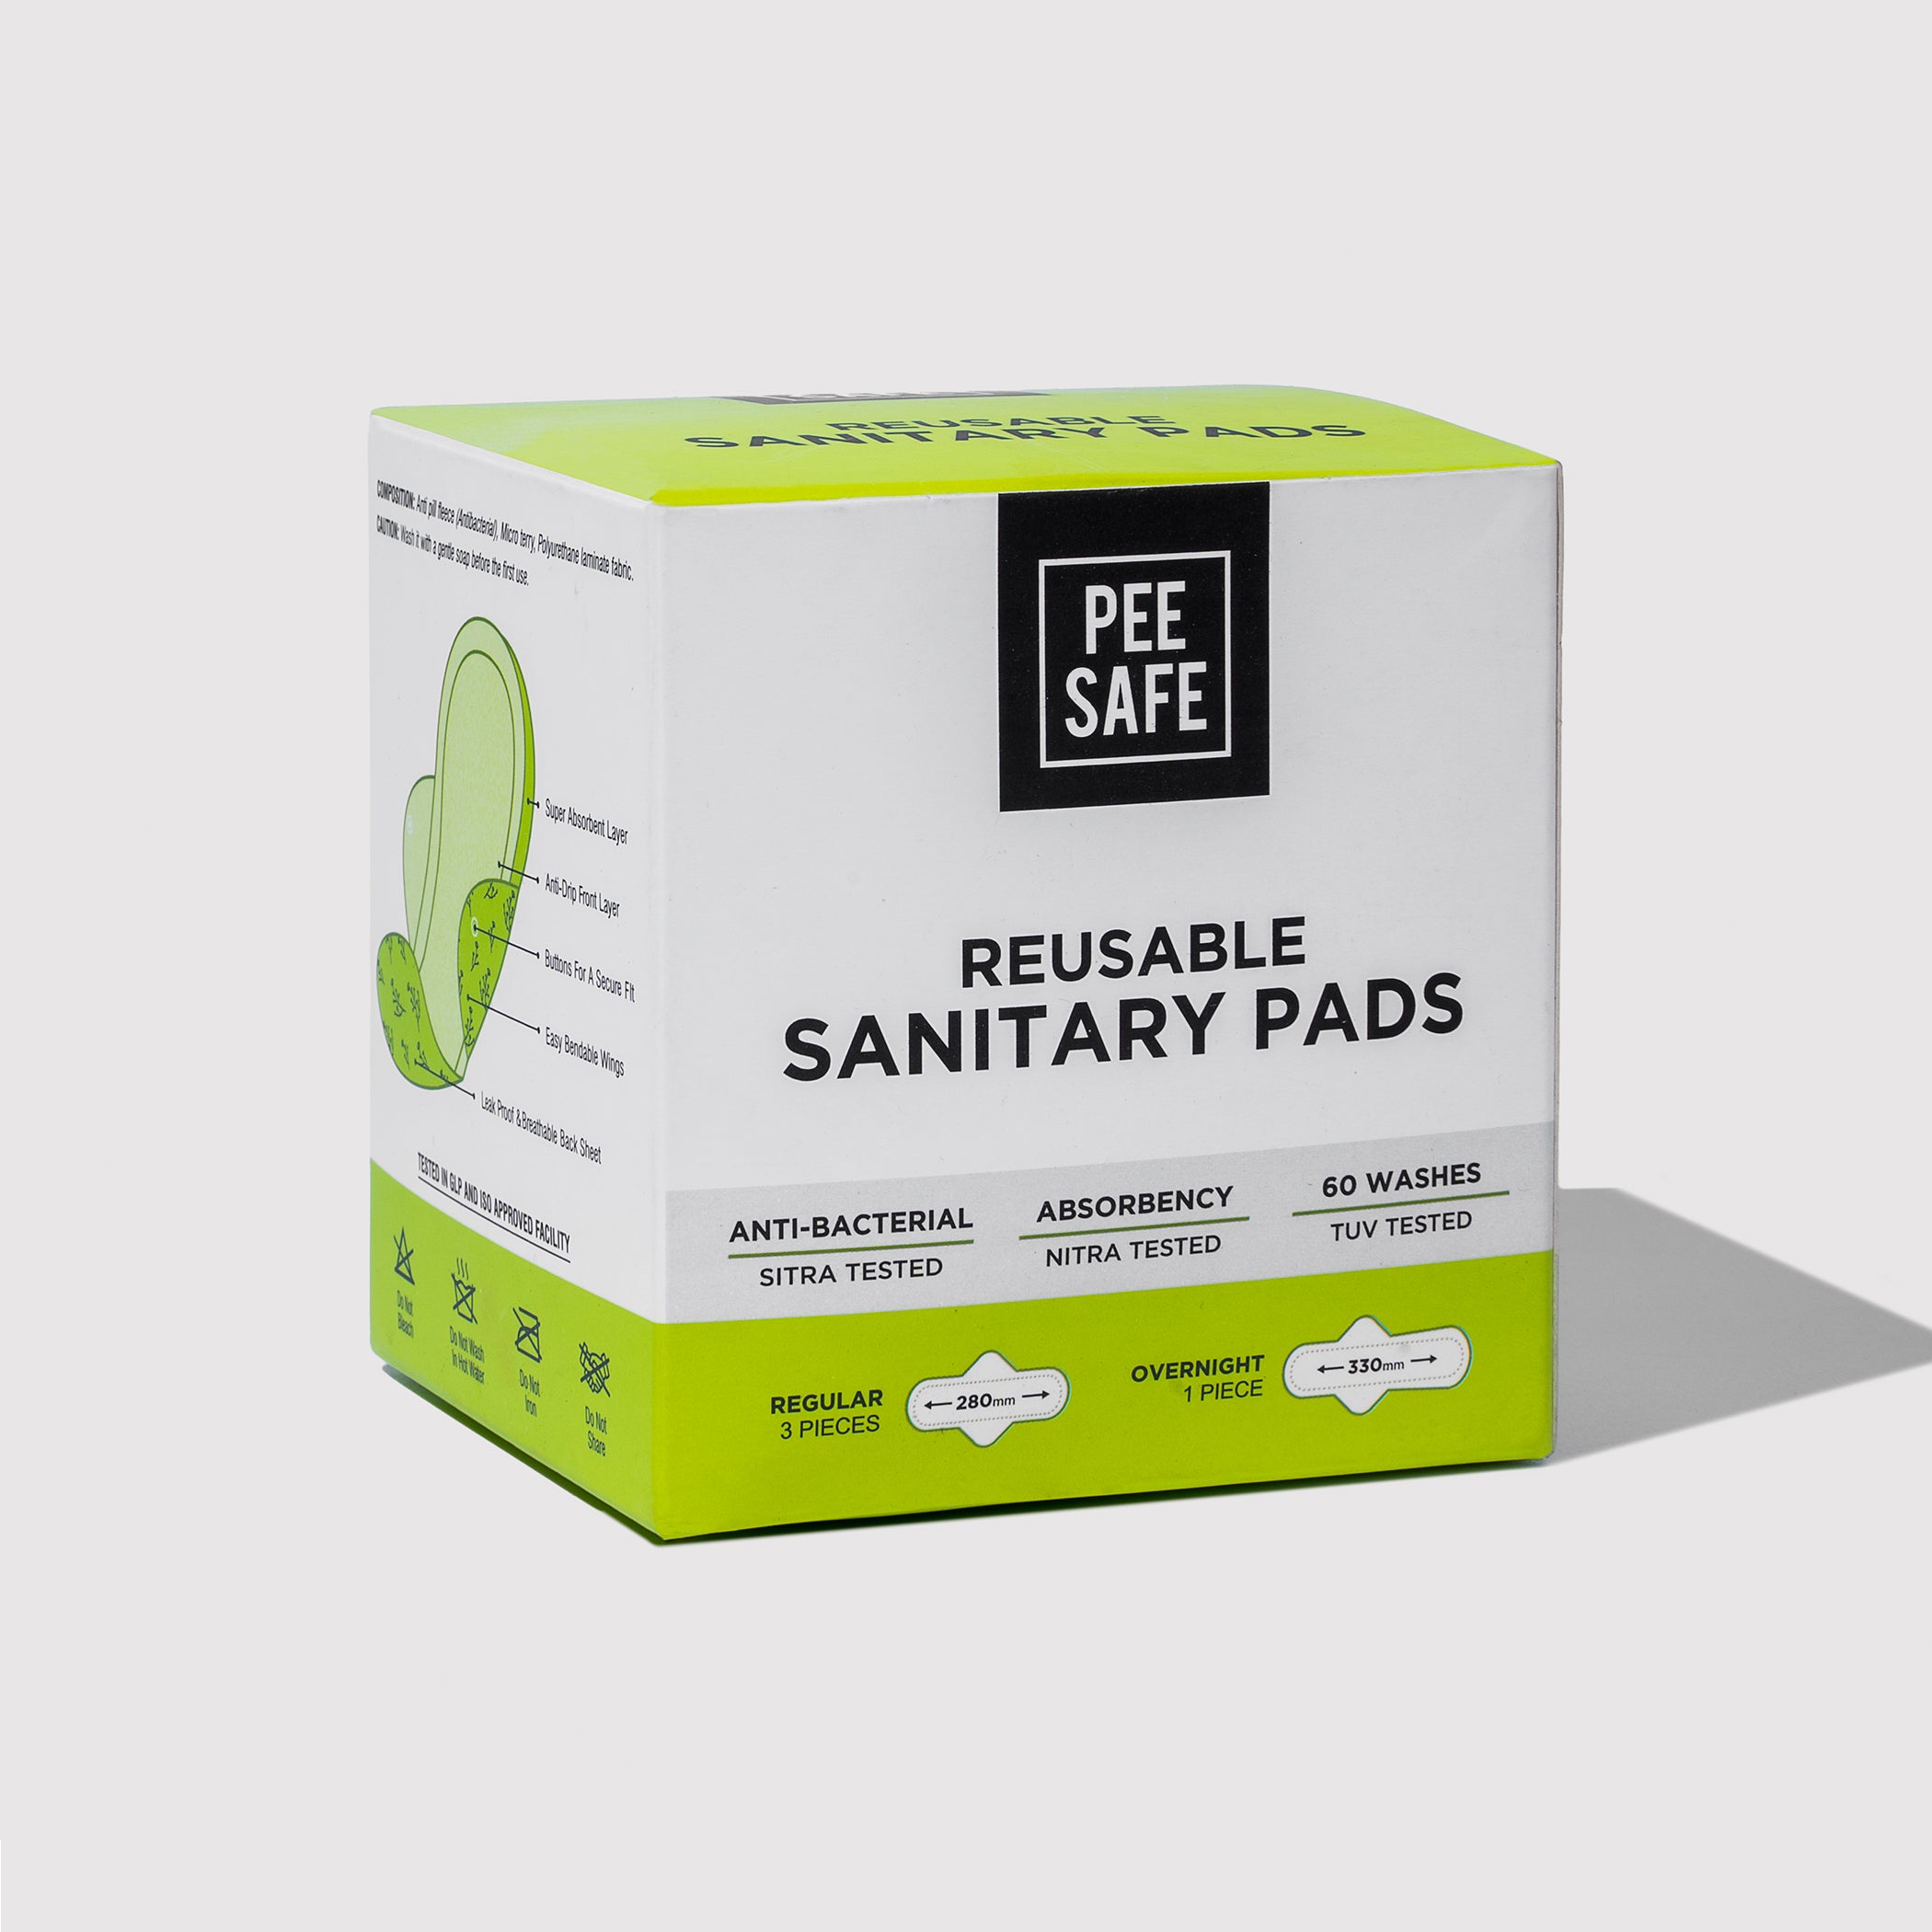 Pee Safe Reusable Sanitary Pads (3 Regular Pads + 1 Night Pad)